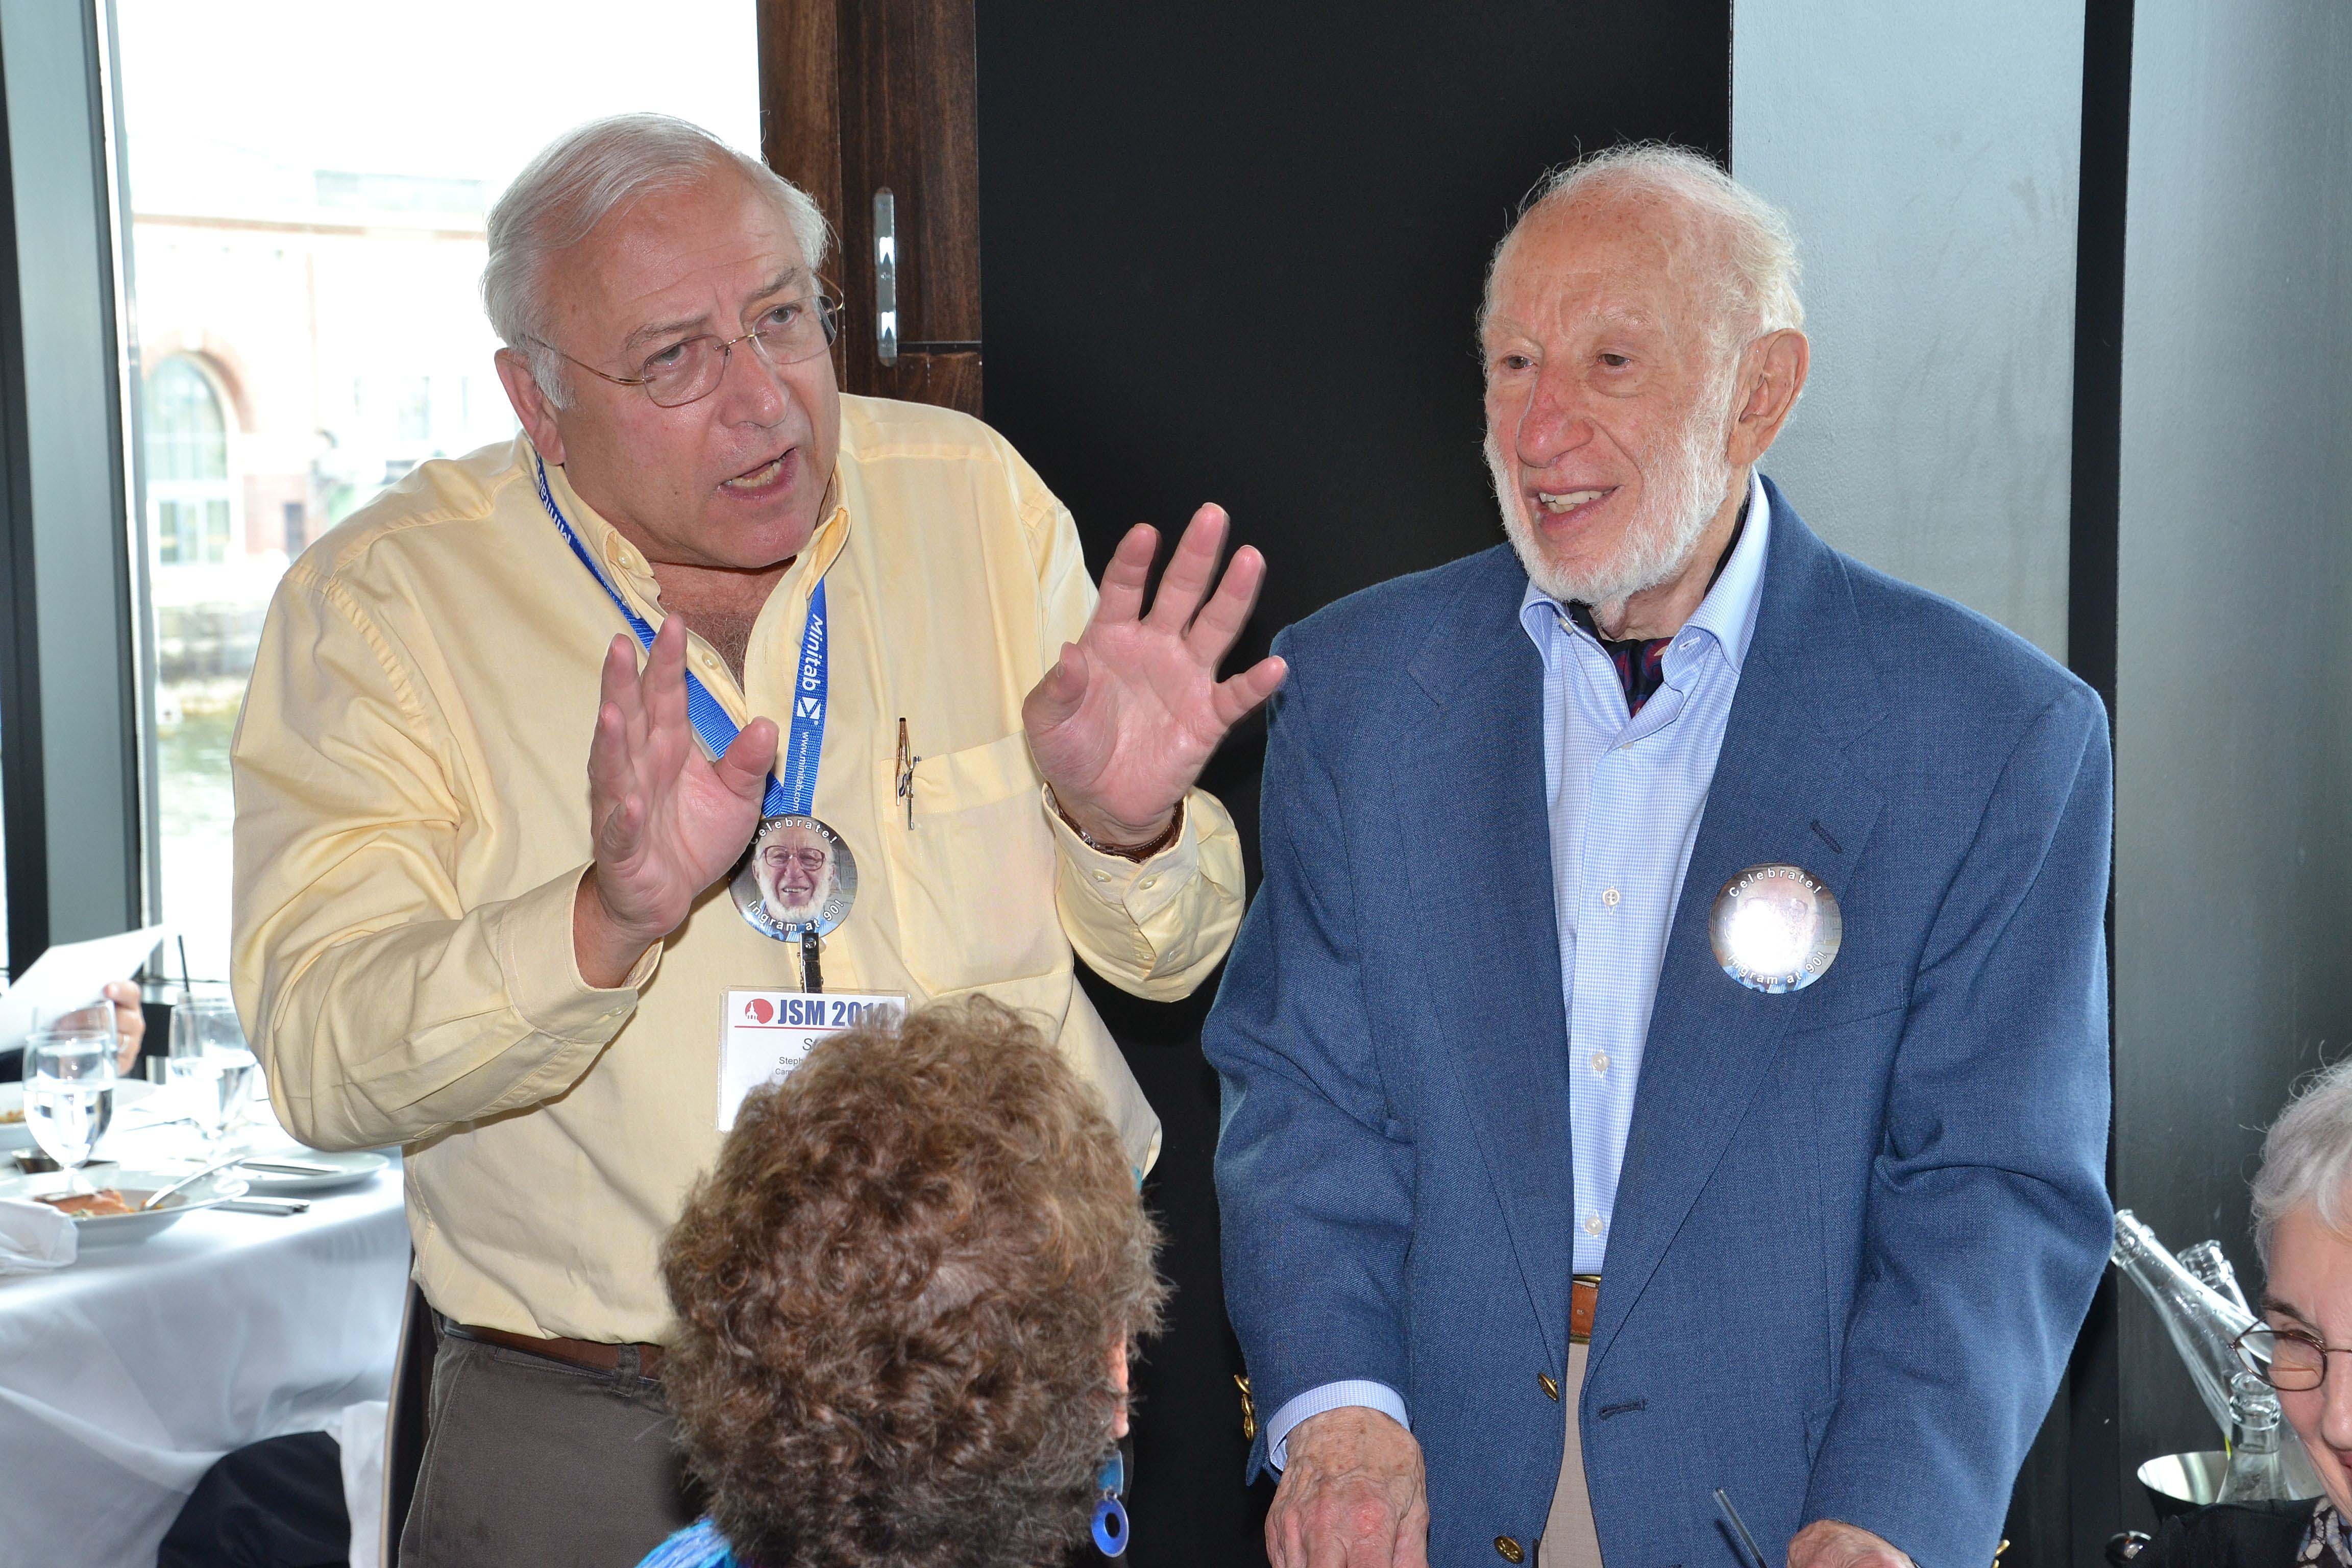 From left: Steve Fienberg and Ingram Olkin celebrate Olkin's 90th birthday